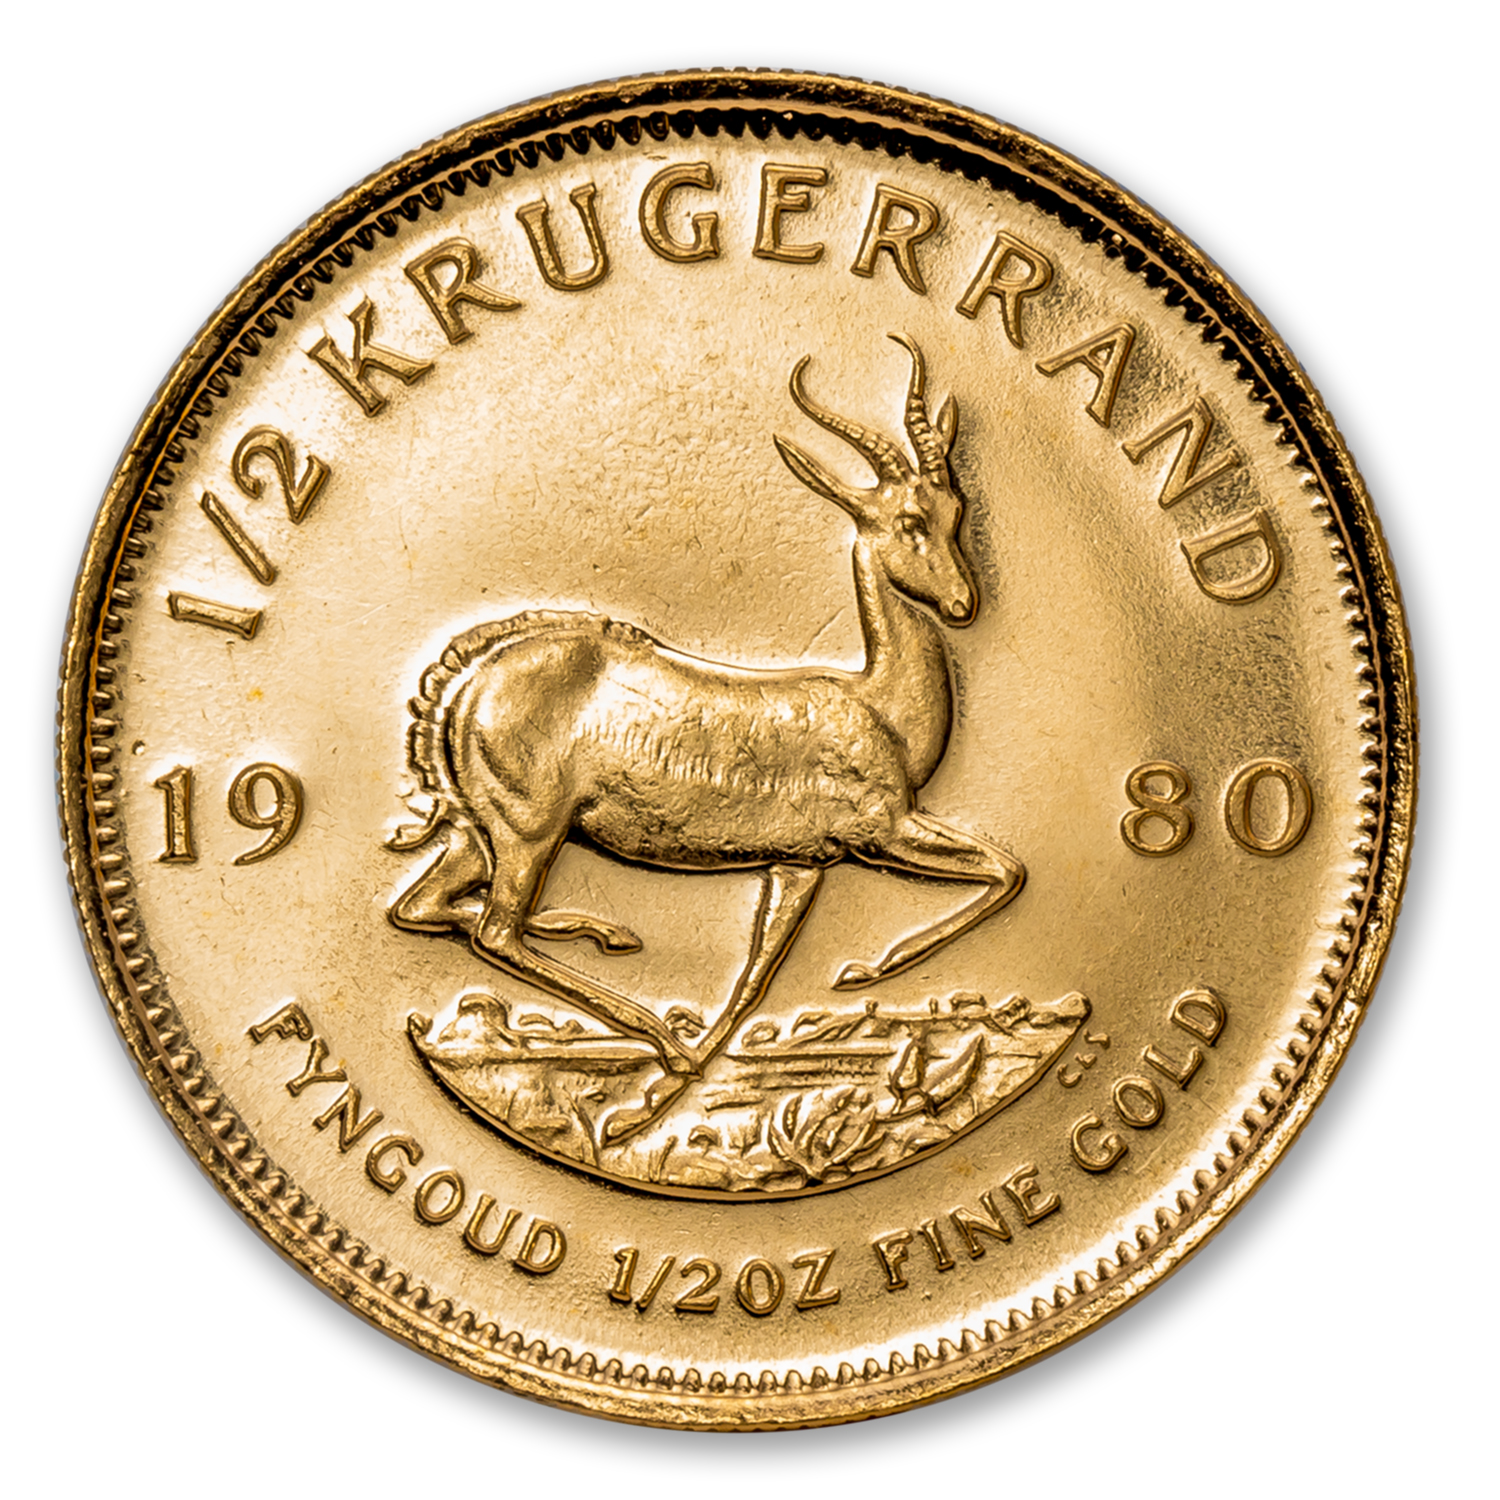 Buy 1980 South Africa 1/2 oz Gold Krugerrand BU